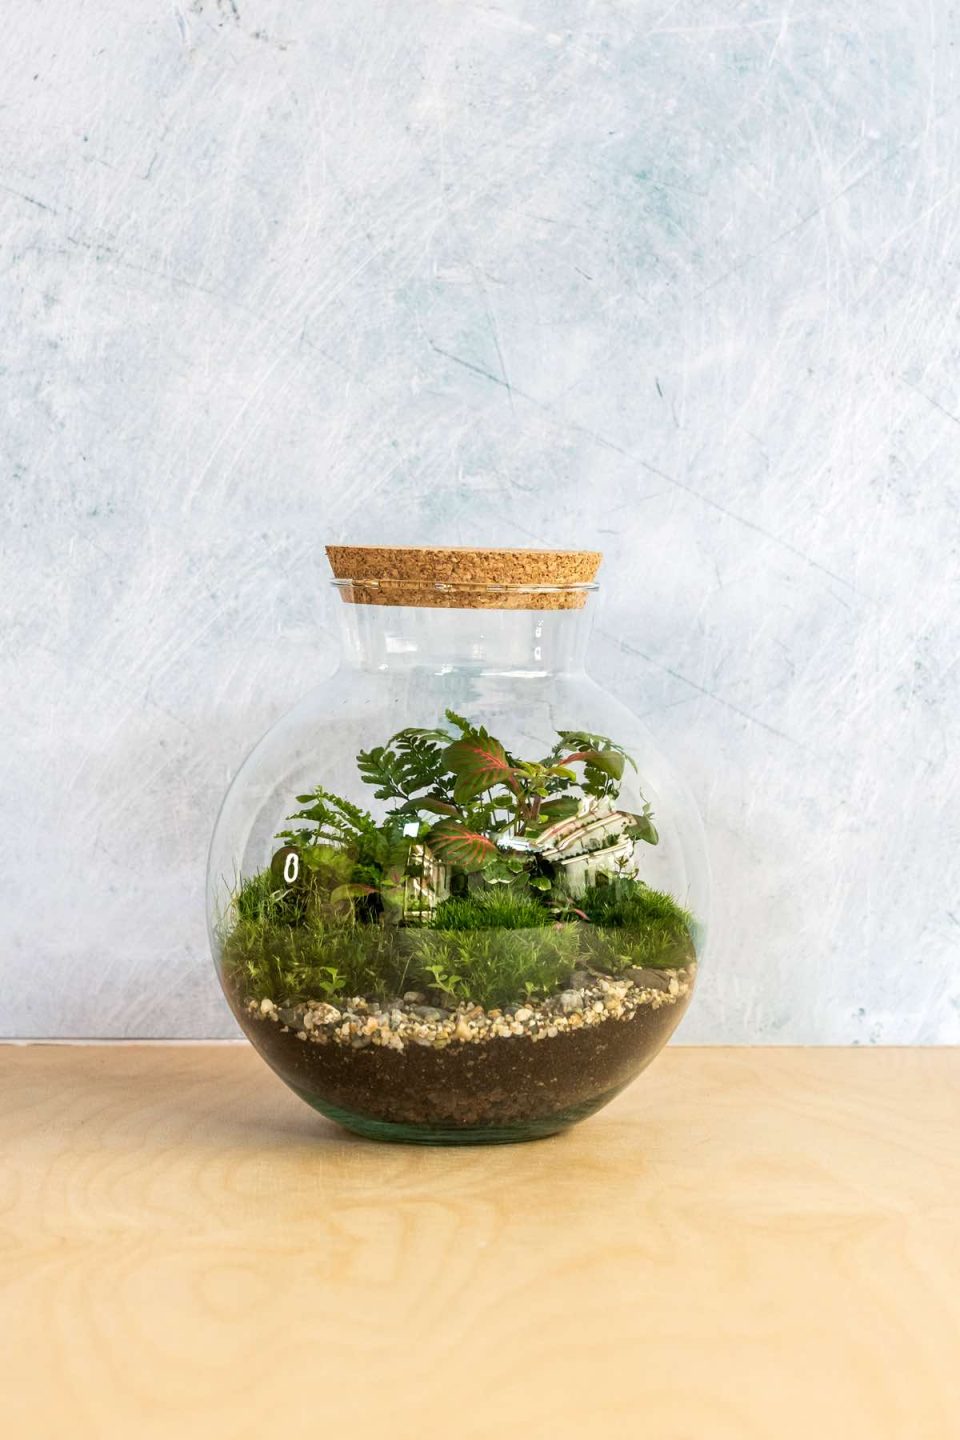 Slika prikazuje biljni terarij u okrugloj staklenci modela "Kugla M". U terariju su posađene razne biljke, zelene fitonije, paprati i mahovina, na dnu se vide ukrasni kamenčići i zemlja. Terarij stoji na drvenom stolu ispred plave pozadine.